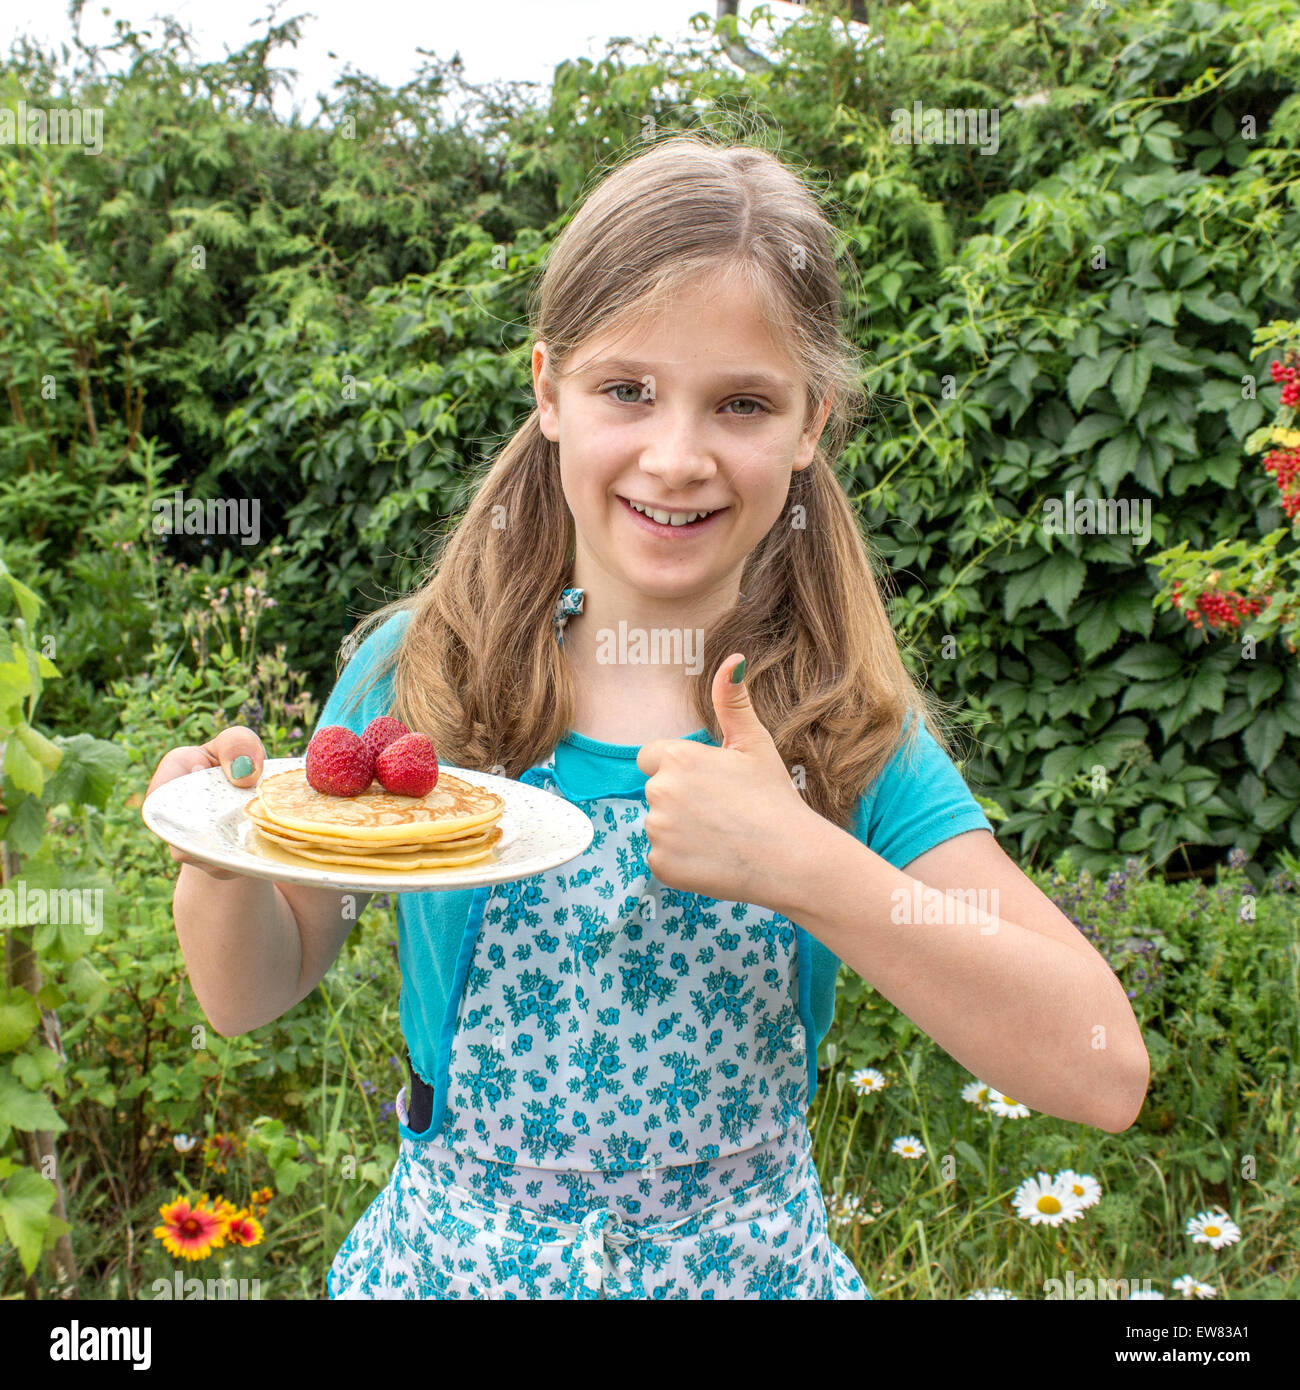 Une jeune fille tenant une assiette de crêpes et de fraises Banque D'Images